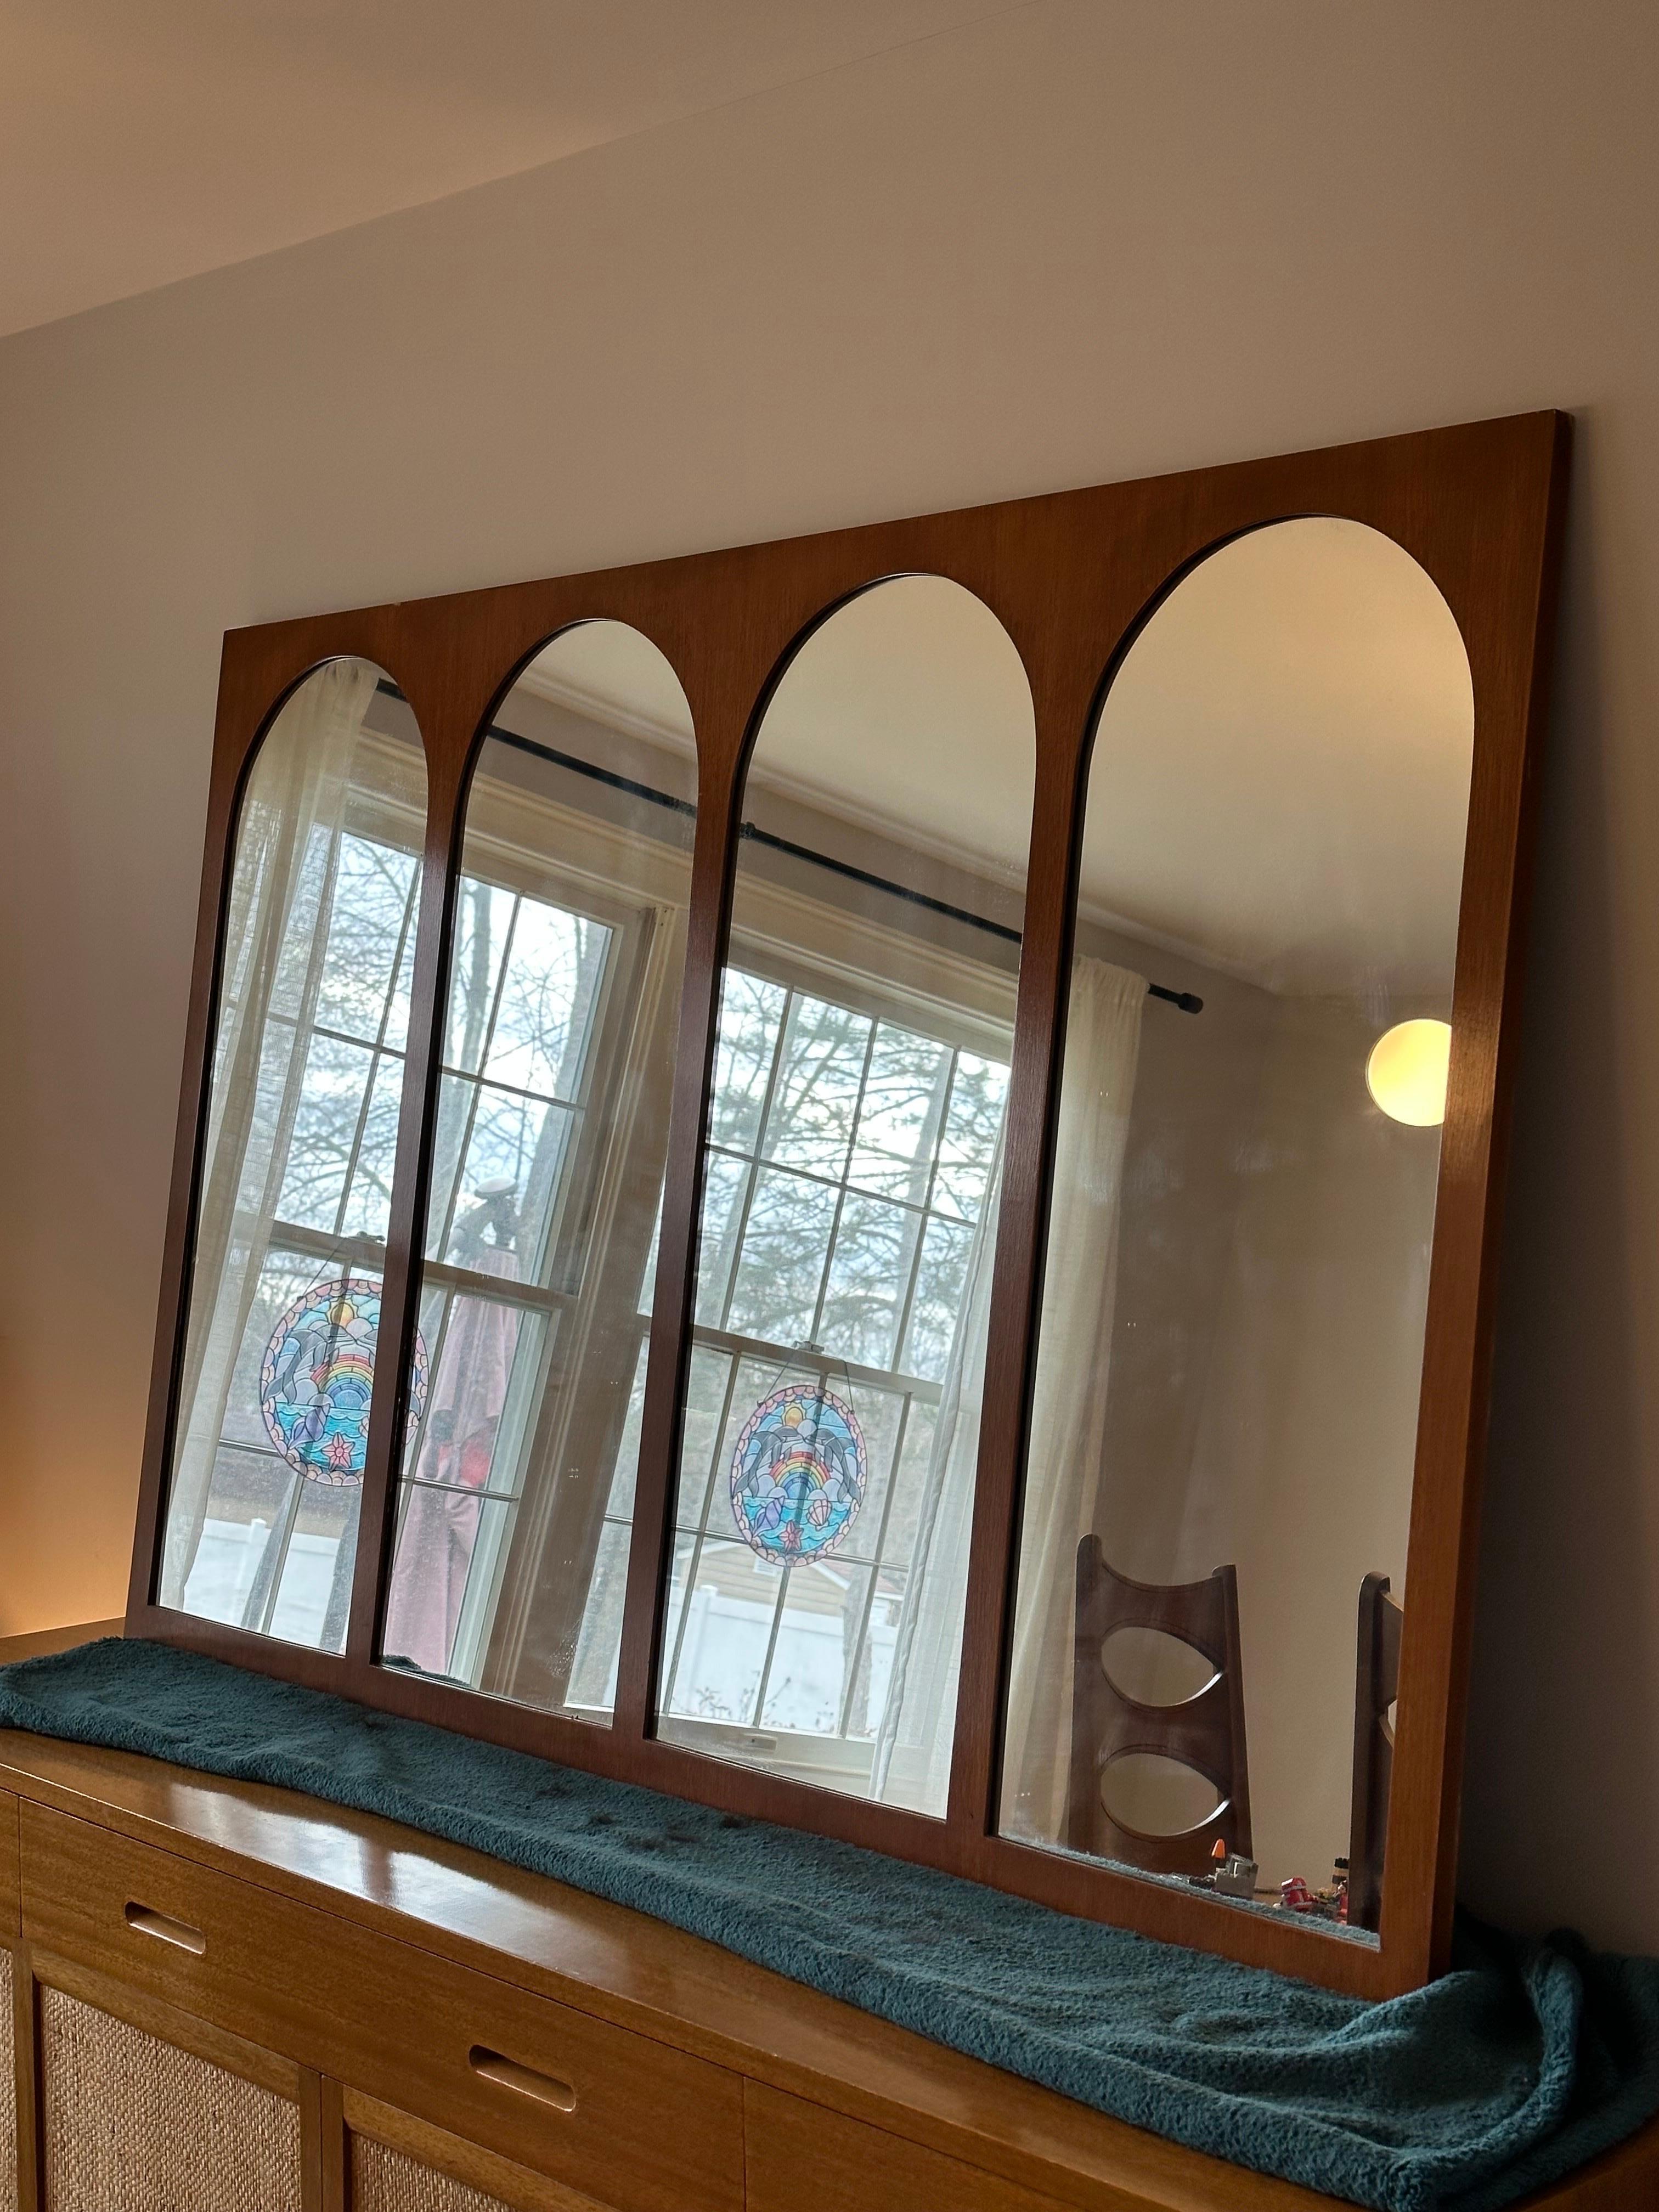 Ein monumentaler Wandspiegel, entworfen von T.H. Robsjohn-Gibbings für Widdicomb. Mit vier gewölbten, in Nussbaum gerahmten Spiegelelementen. Ein einzigartiges und vielseitiges Stück, das sowohl funktionell als auch künstlerisch ist. Diese